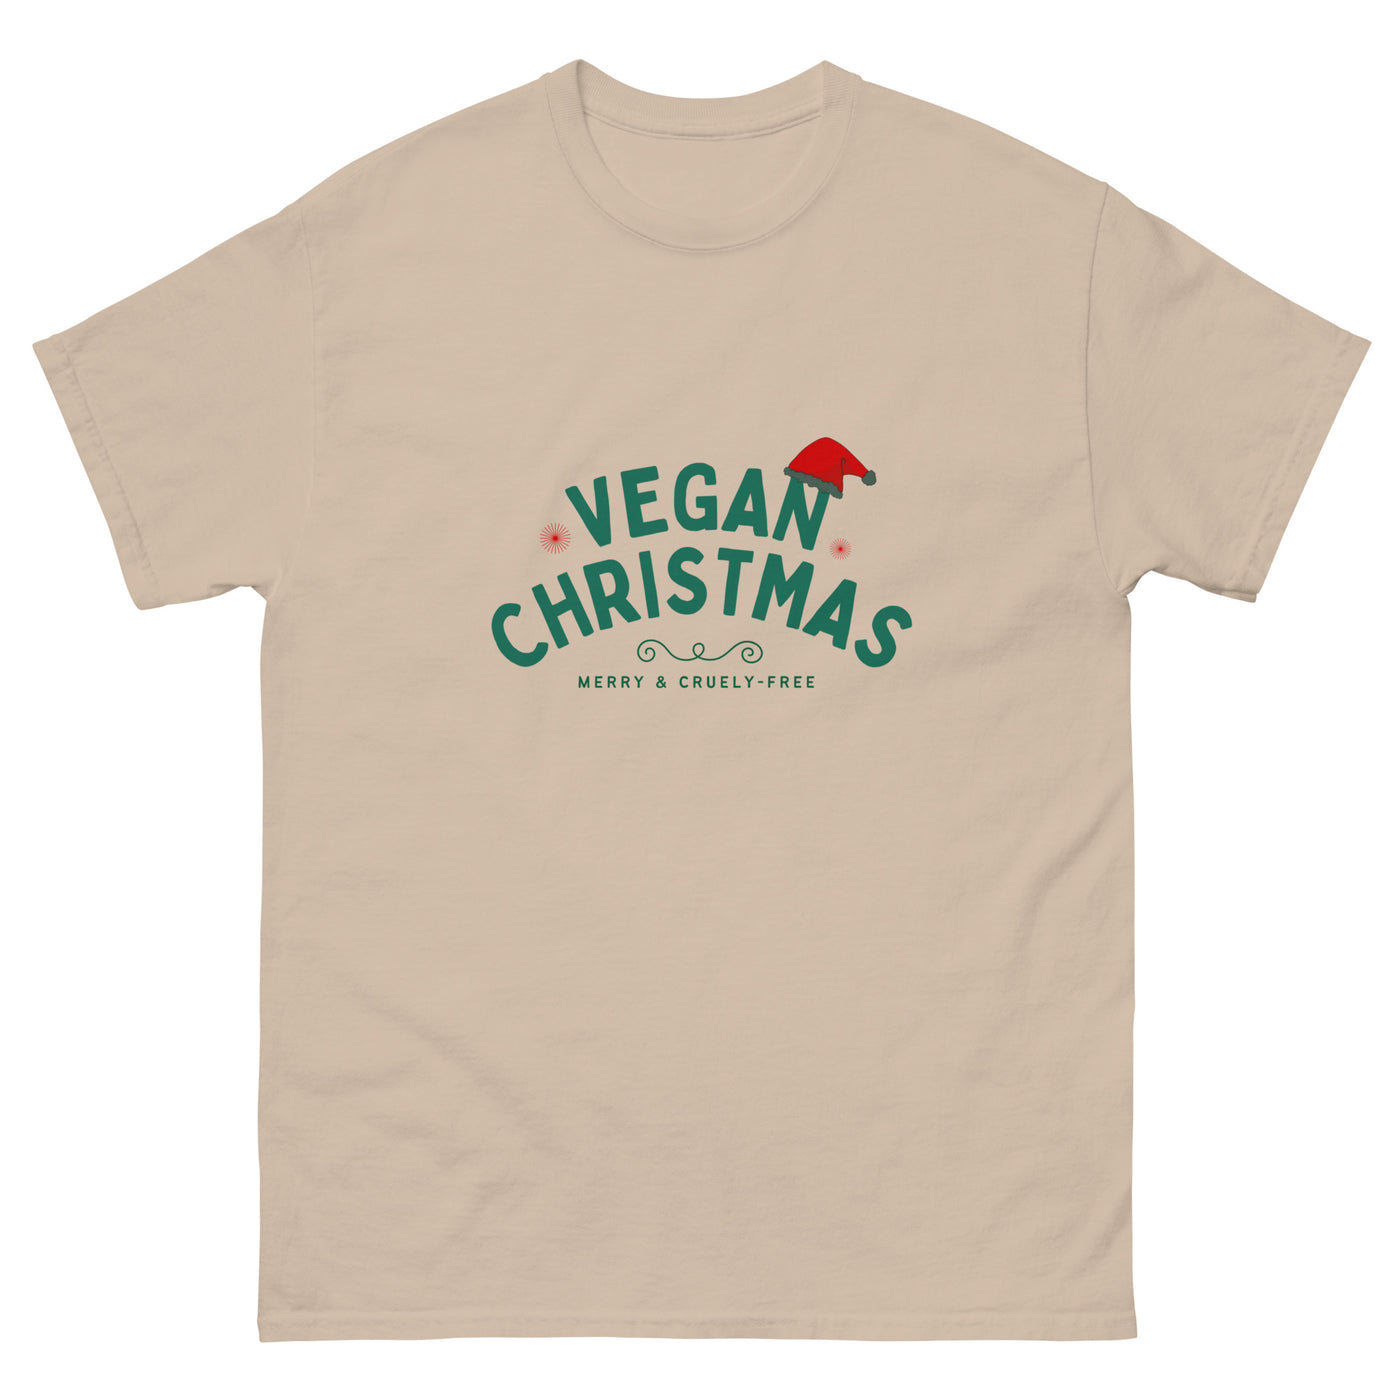 Vegan XMAS T-shirt